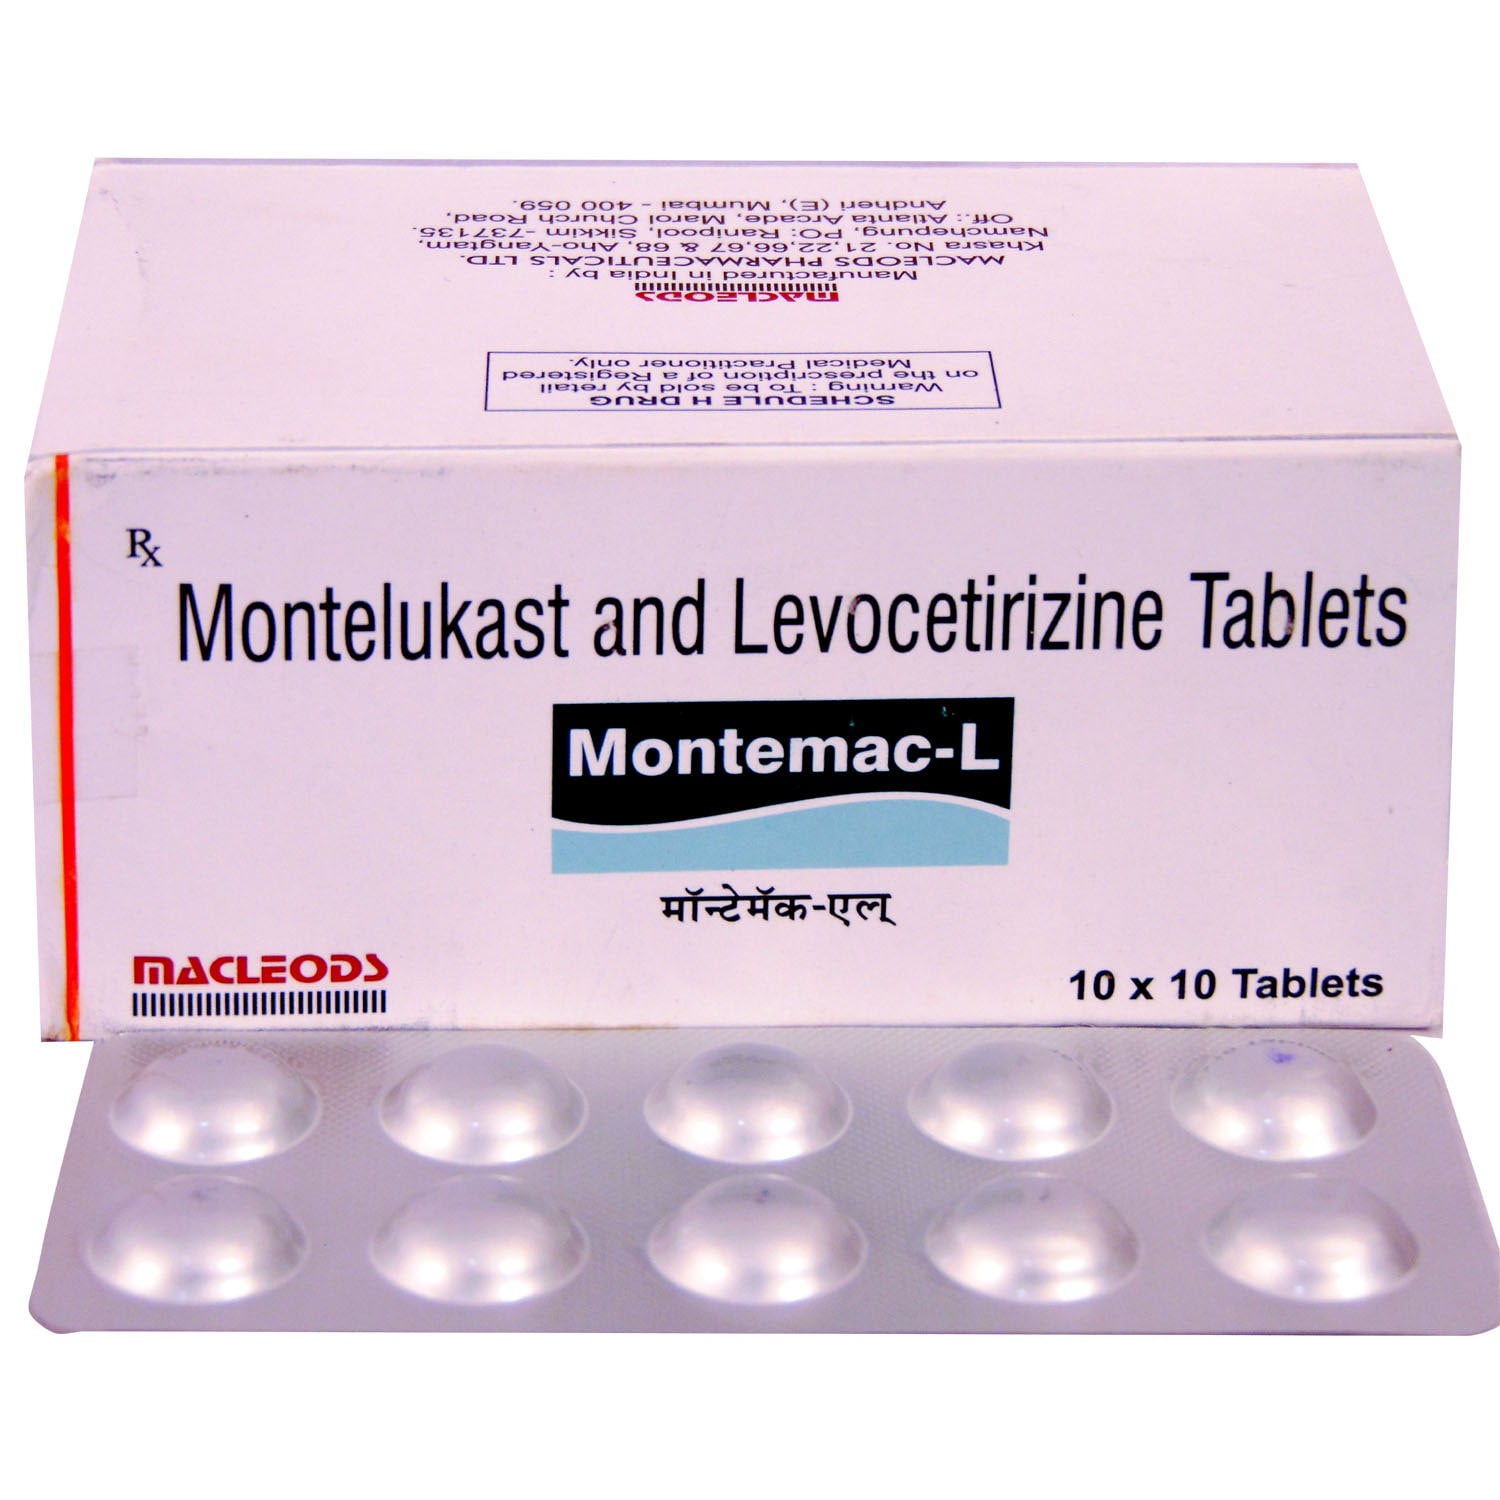 https://healthygk.com/wp-content/uploads/2022/09/Montemac-L-Tablet.jpg